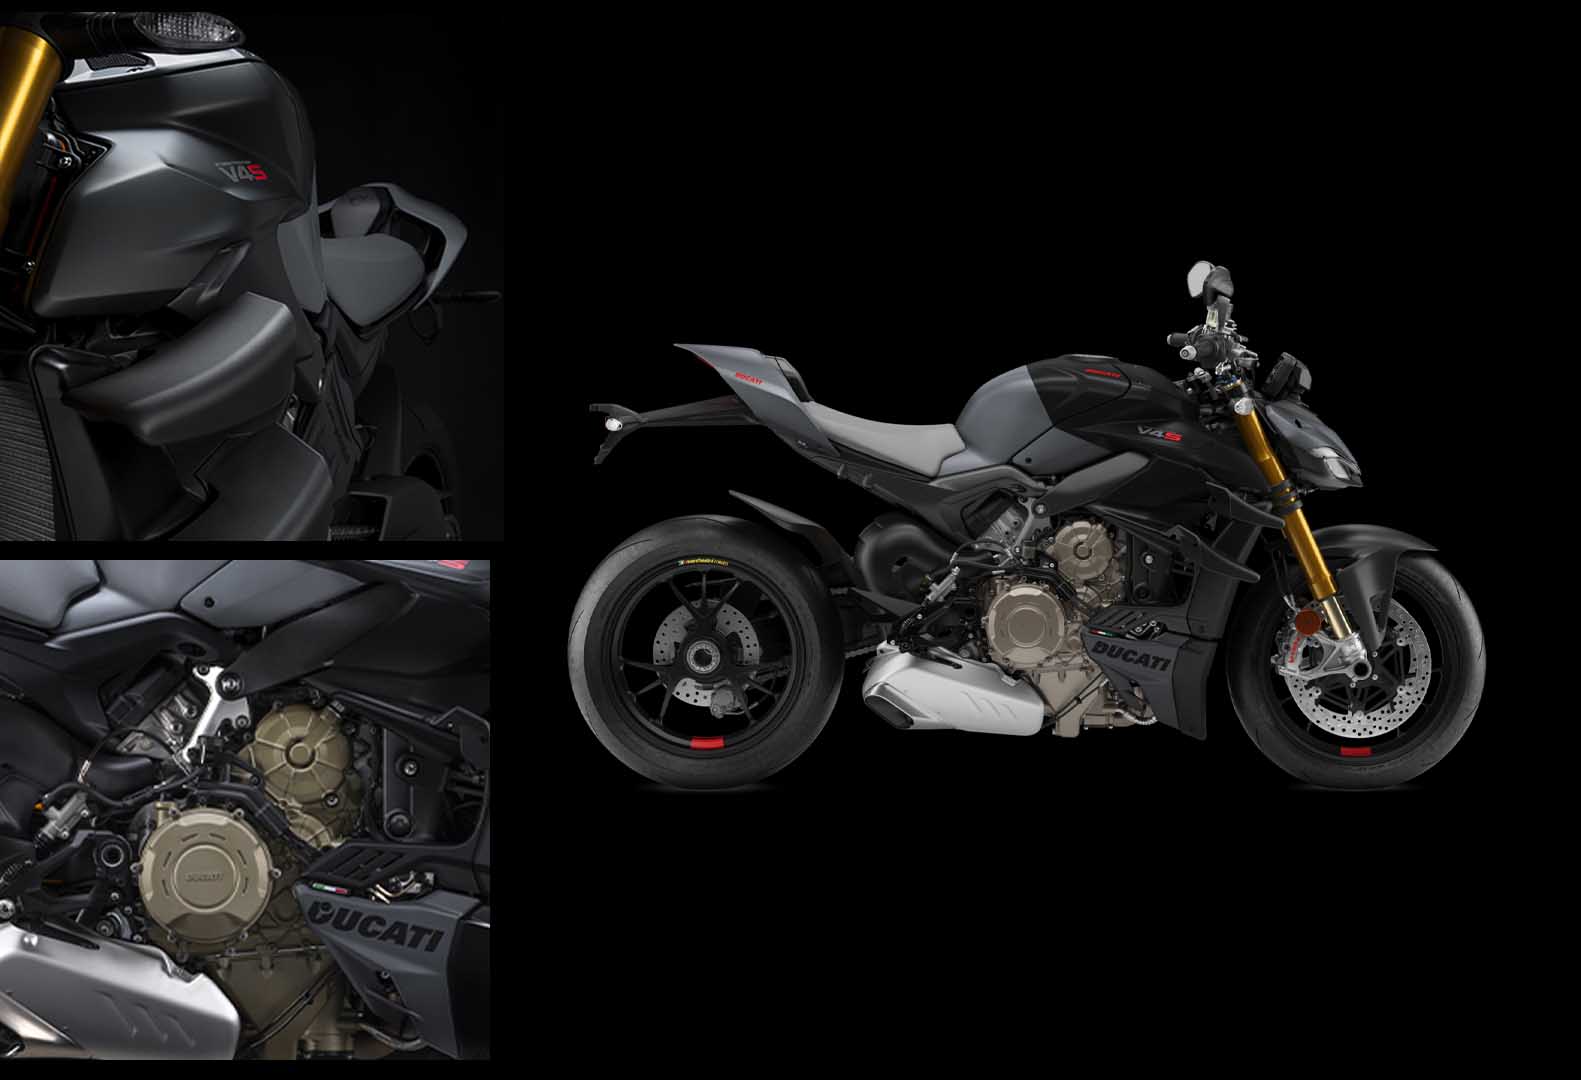 The new 2023 Ducati Streetfighter V4S